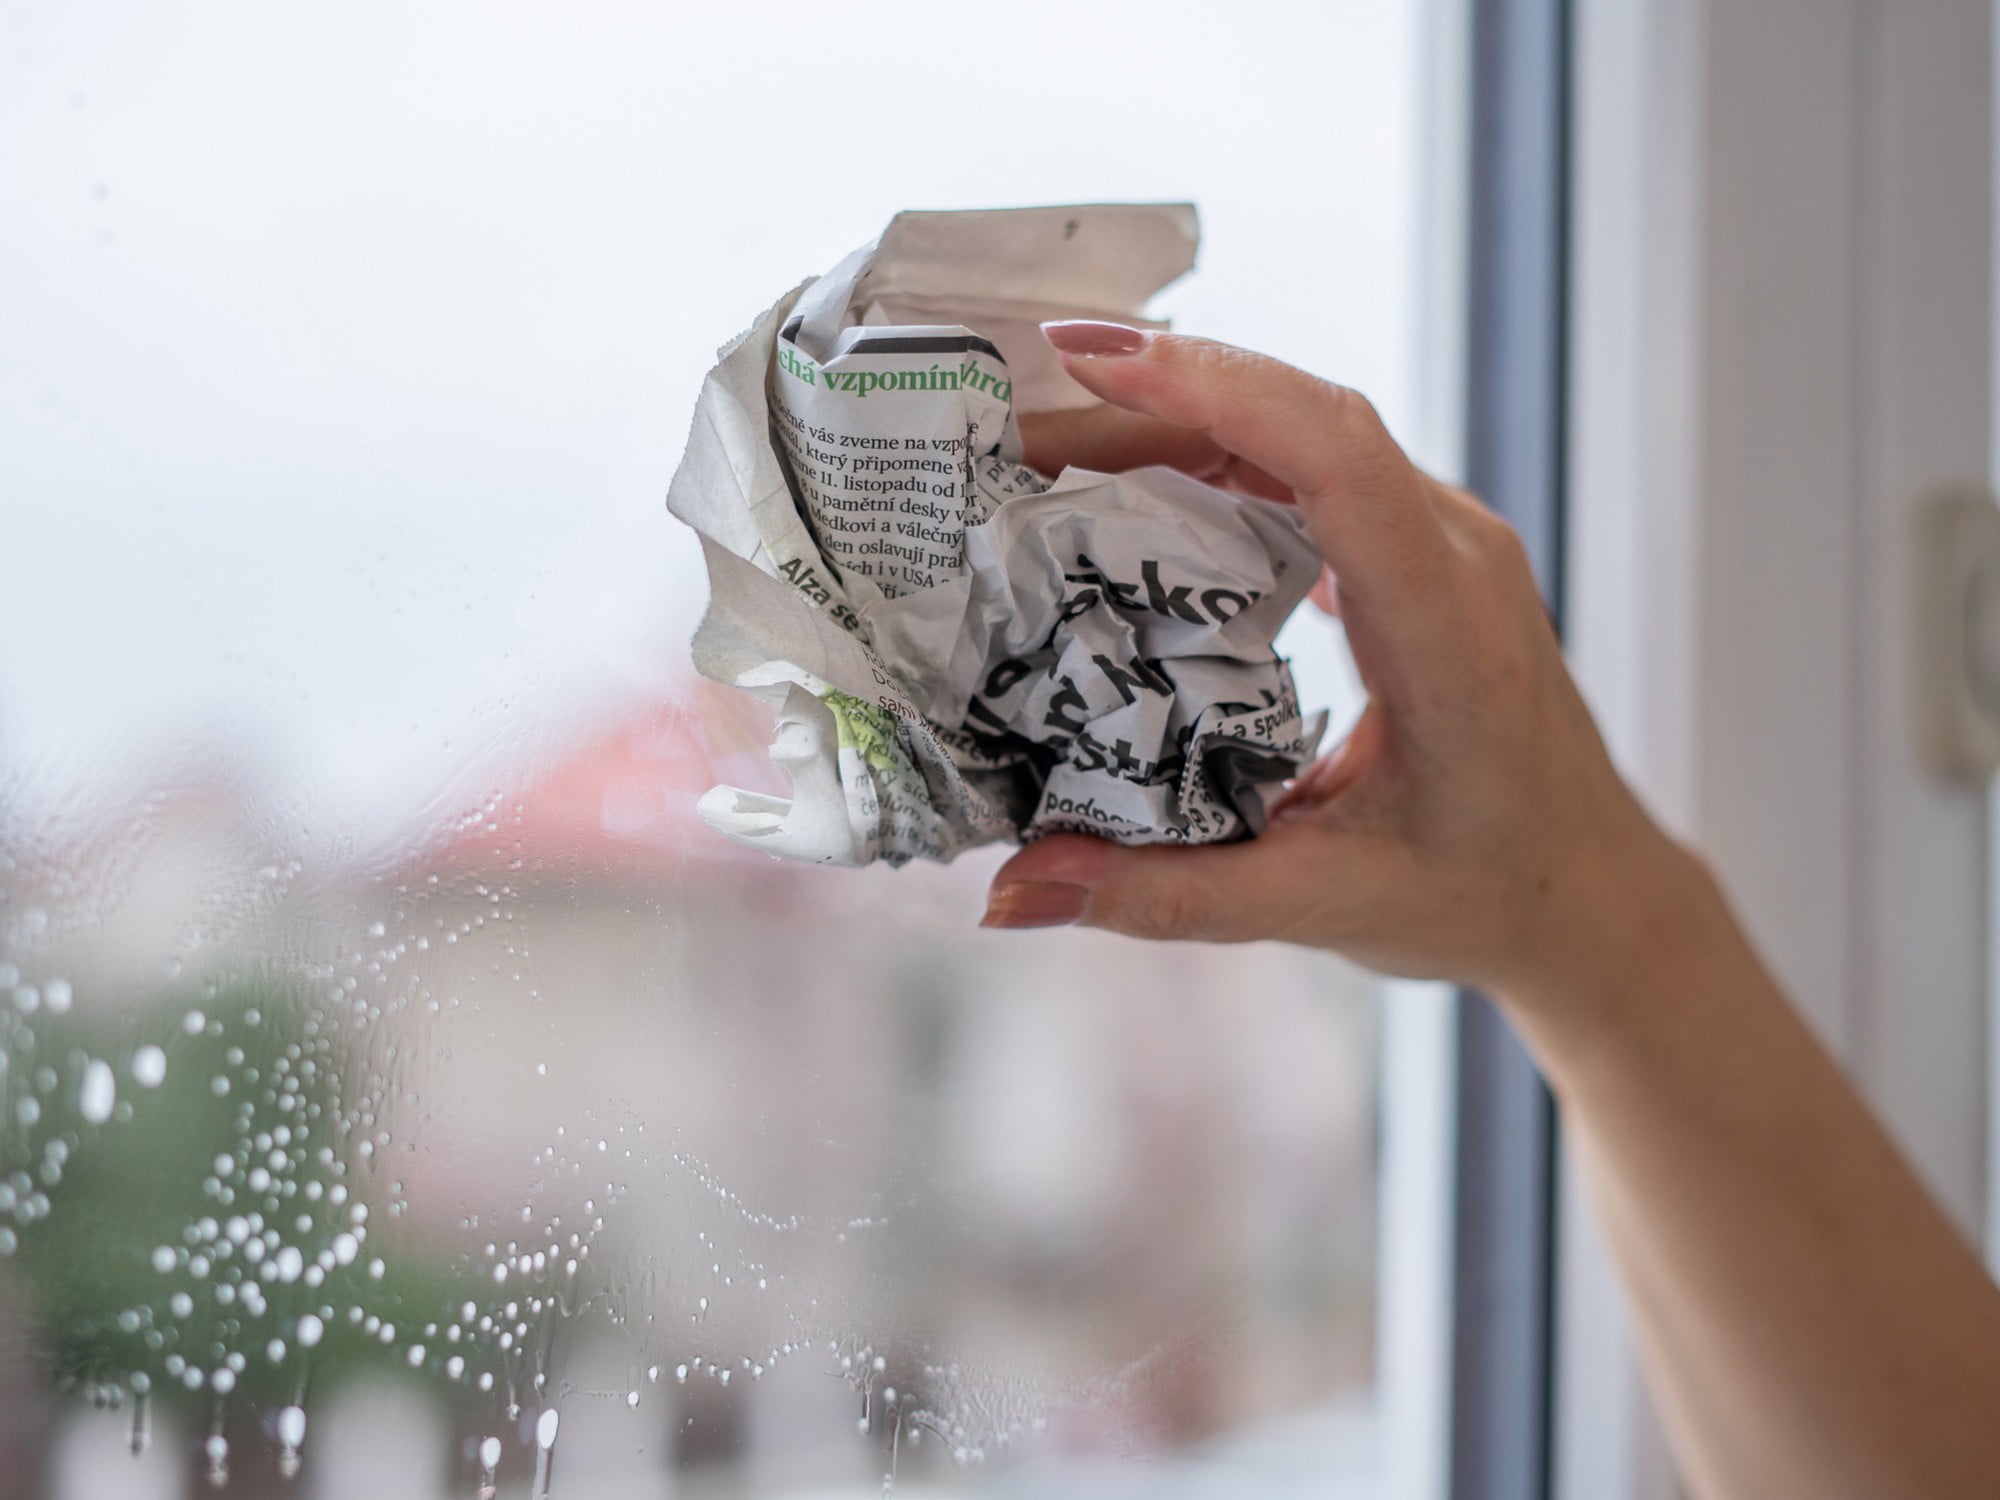 Пазете се от миене на прозорците с вестници: част от боята може да изтече от тях и да изцапа светлите рамки на прозорците.